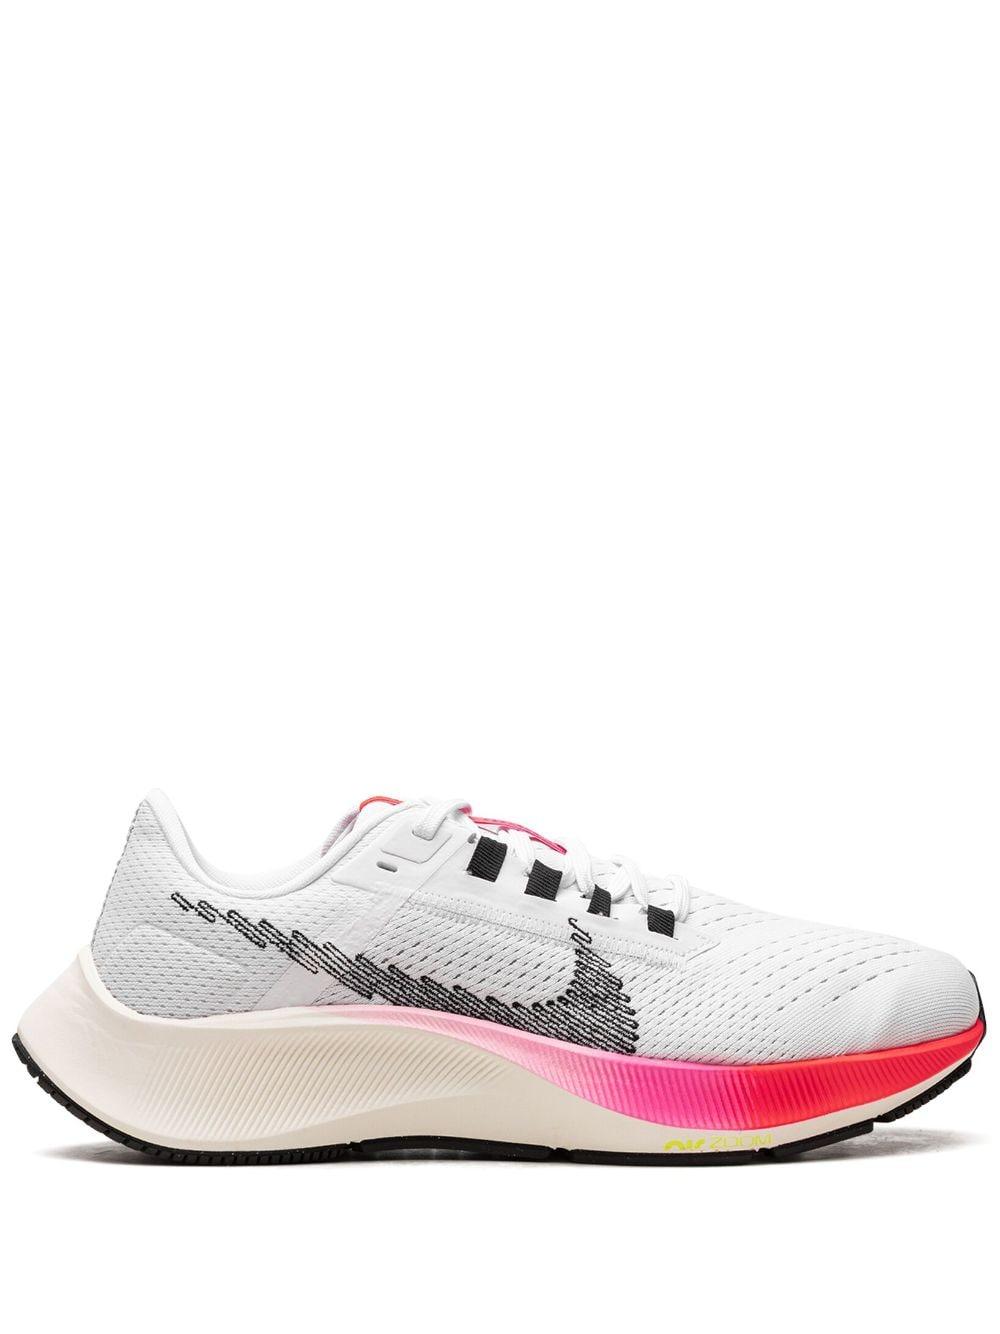 Nike Air Zoom Pegasus 38 "rawdacious" Sneakers in Pink | Lyst